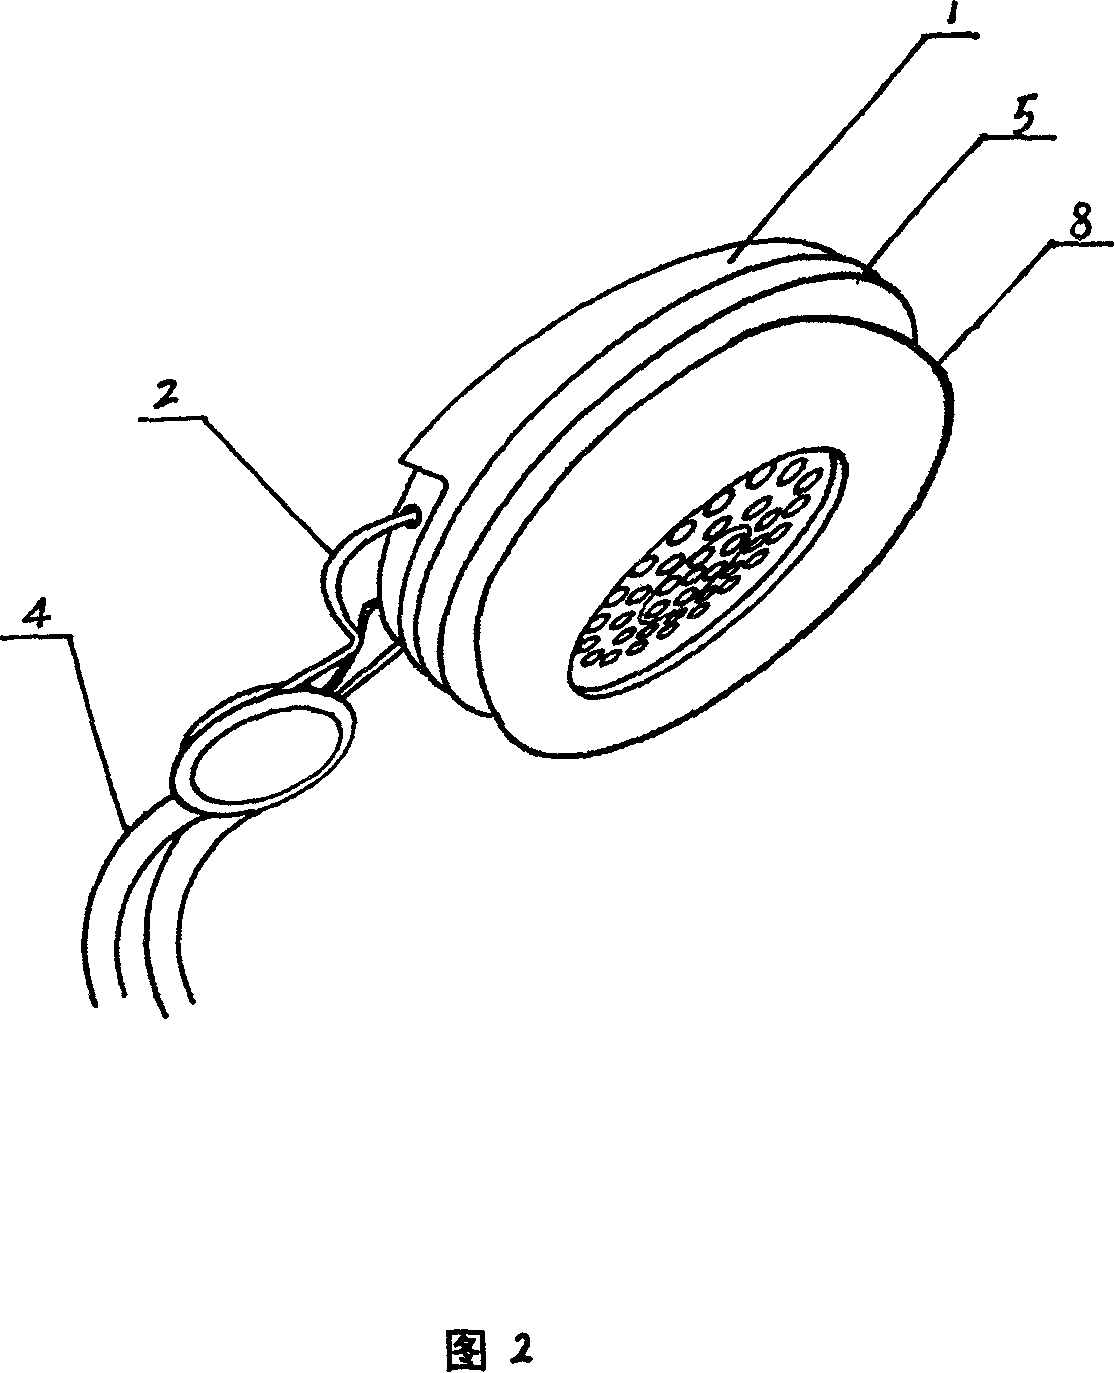 Head-wearing earphone with breathing ear cushion